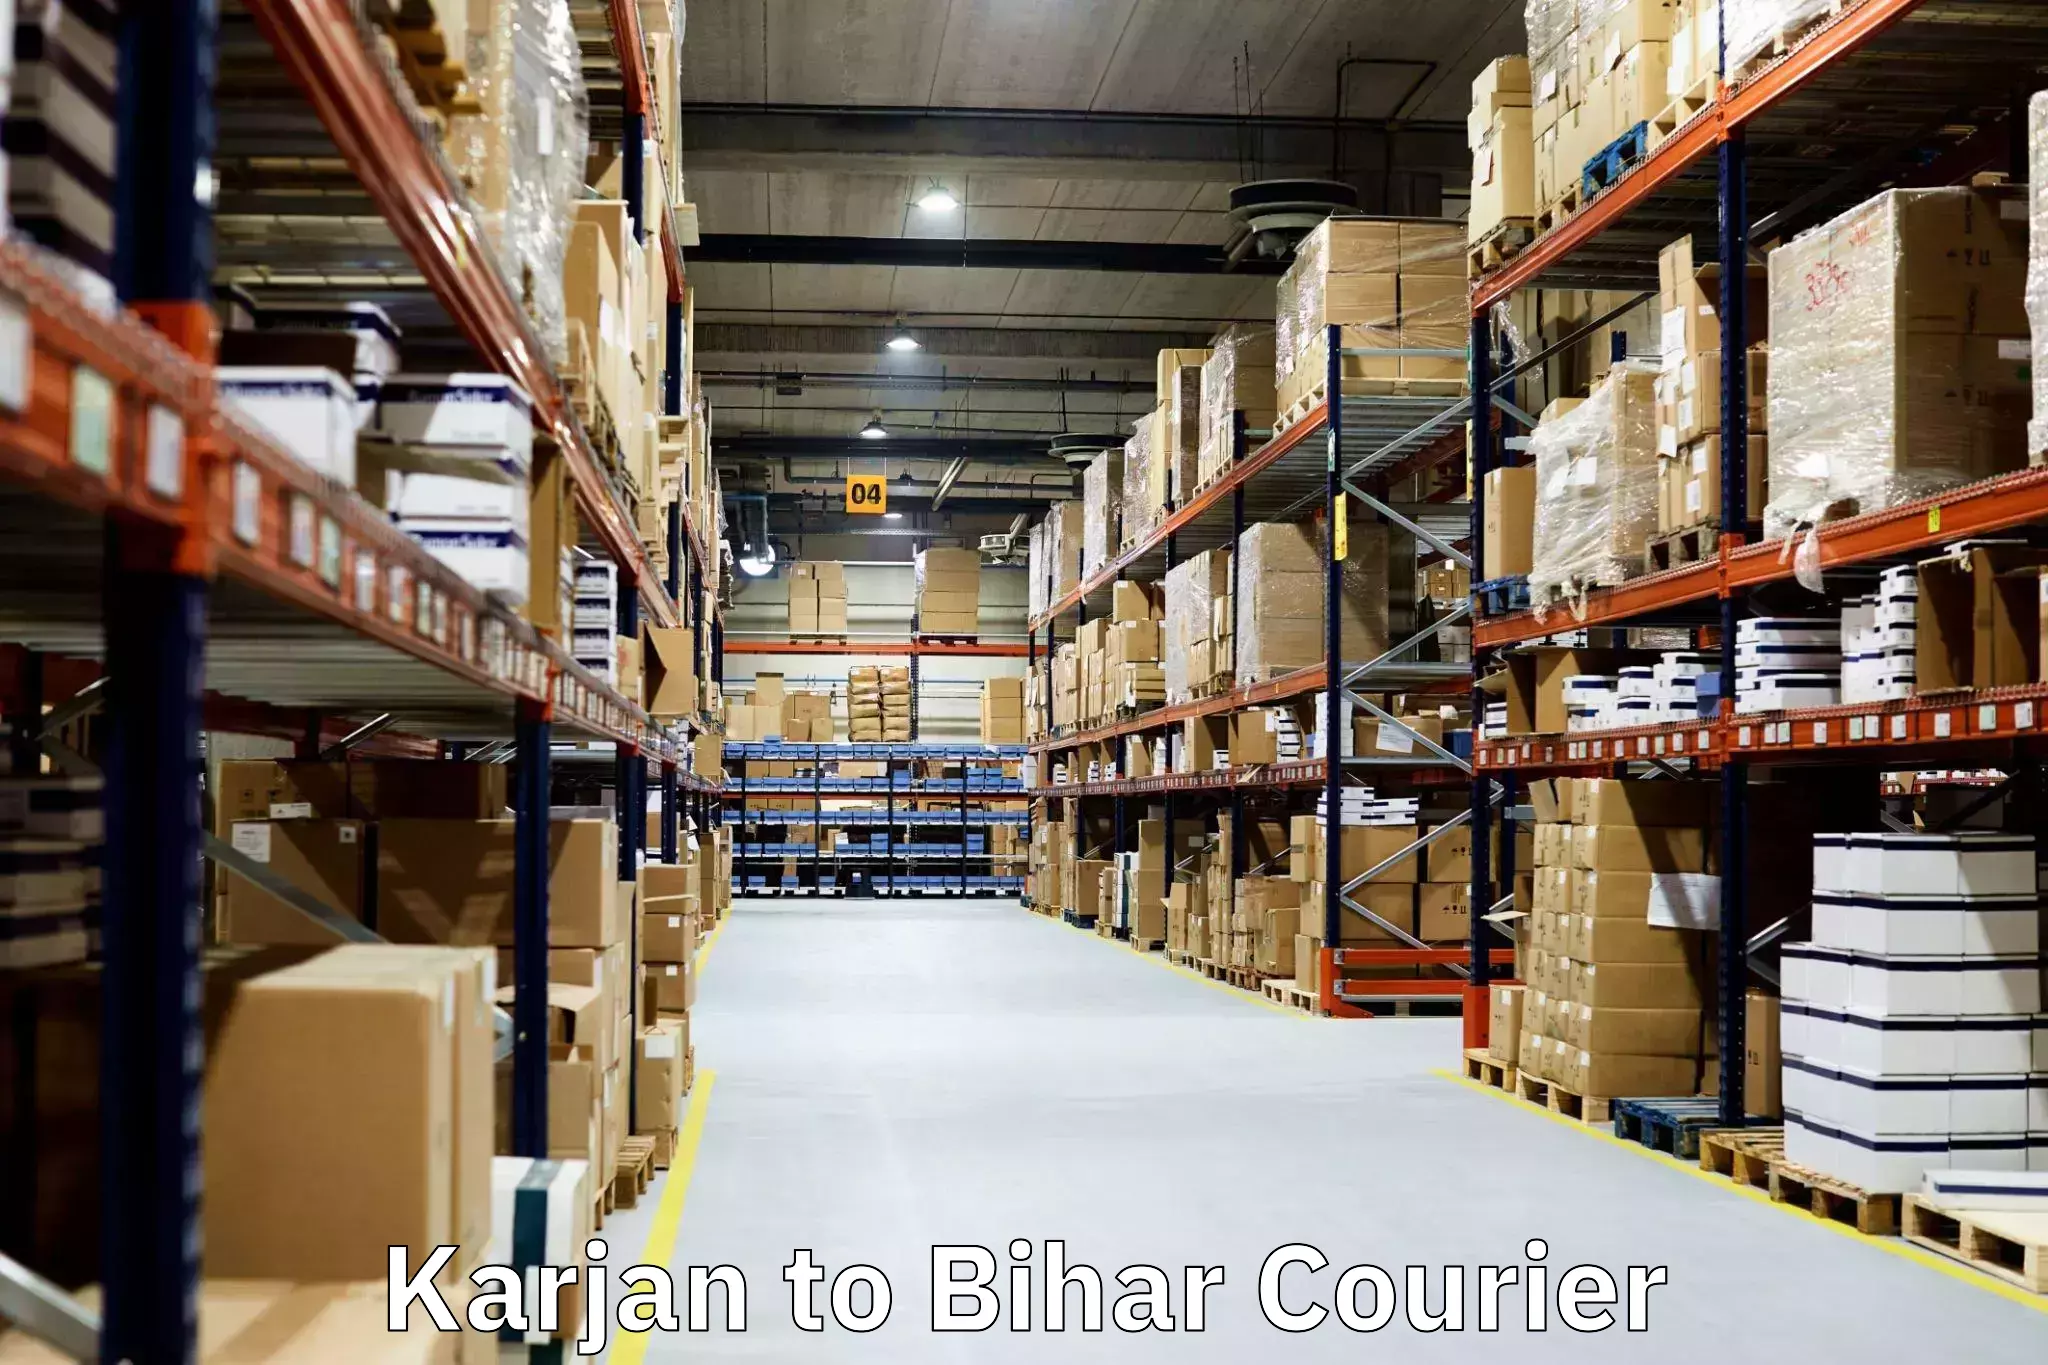 Nationwide furniture transport Karjan to Bihar